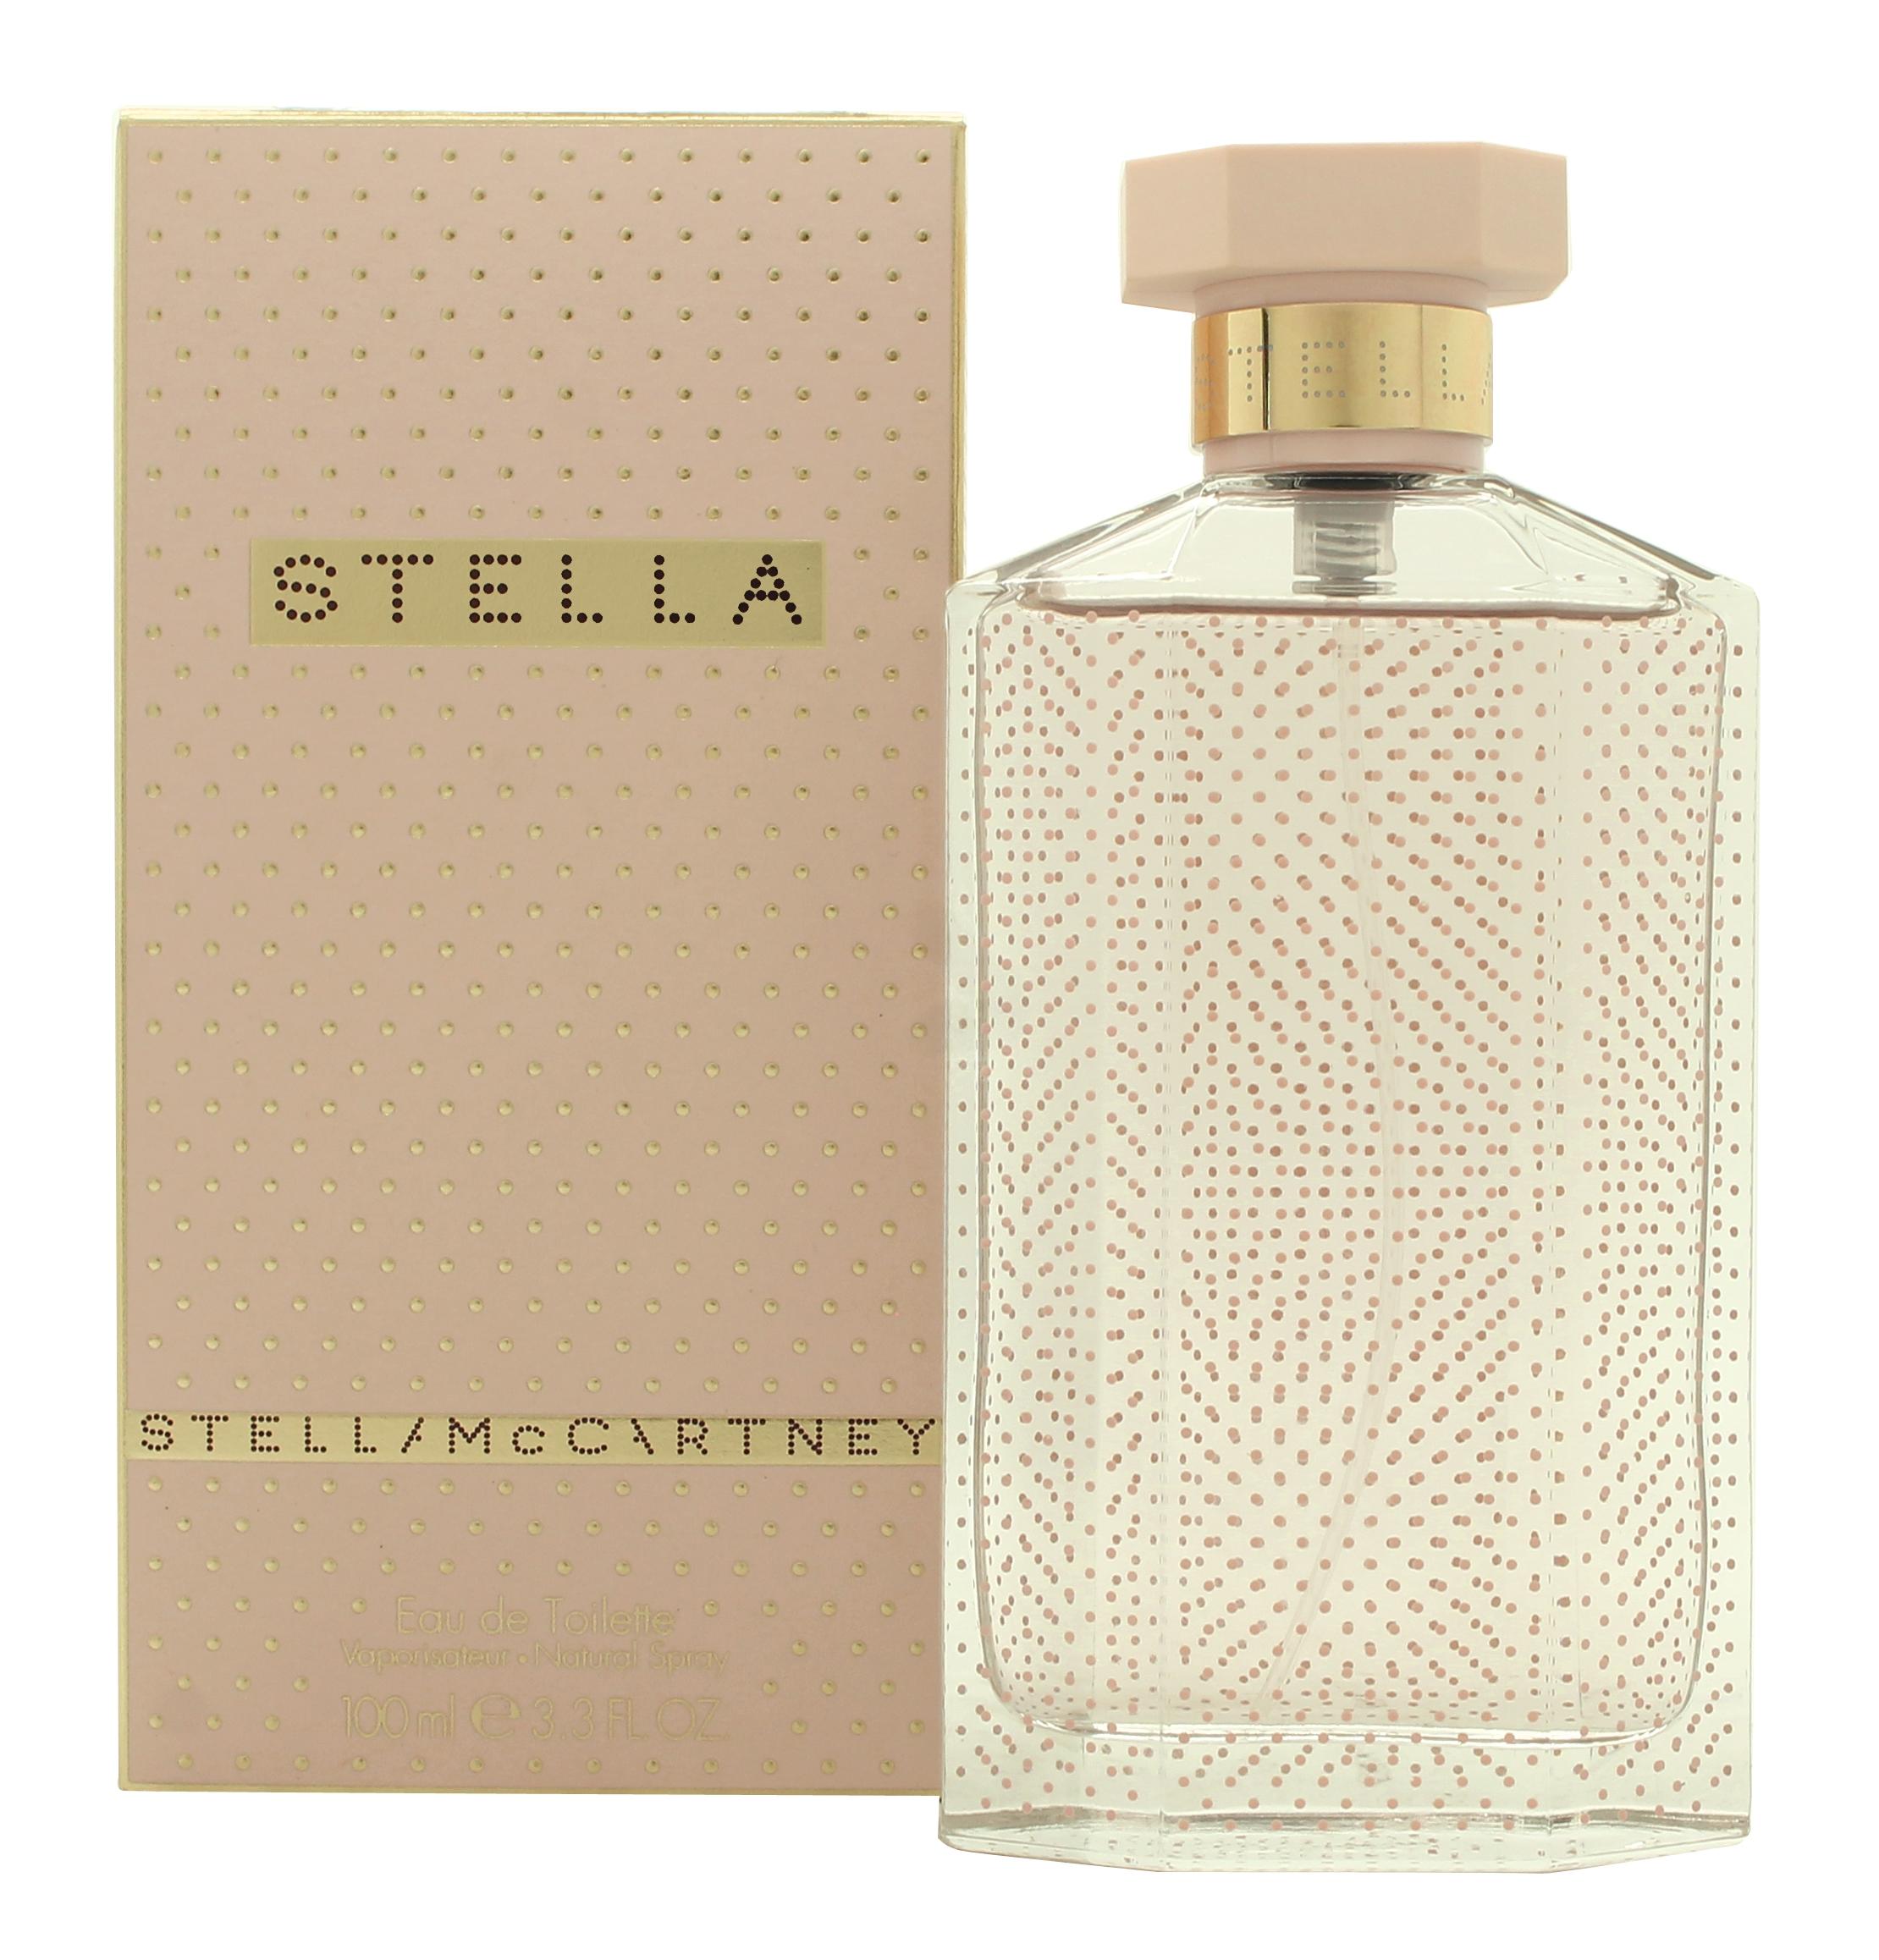 Stella McCartney Stella Mccartney Eau de Toilette 100ml Spray